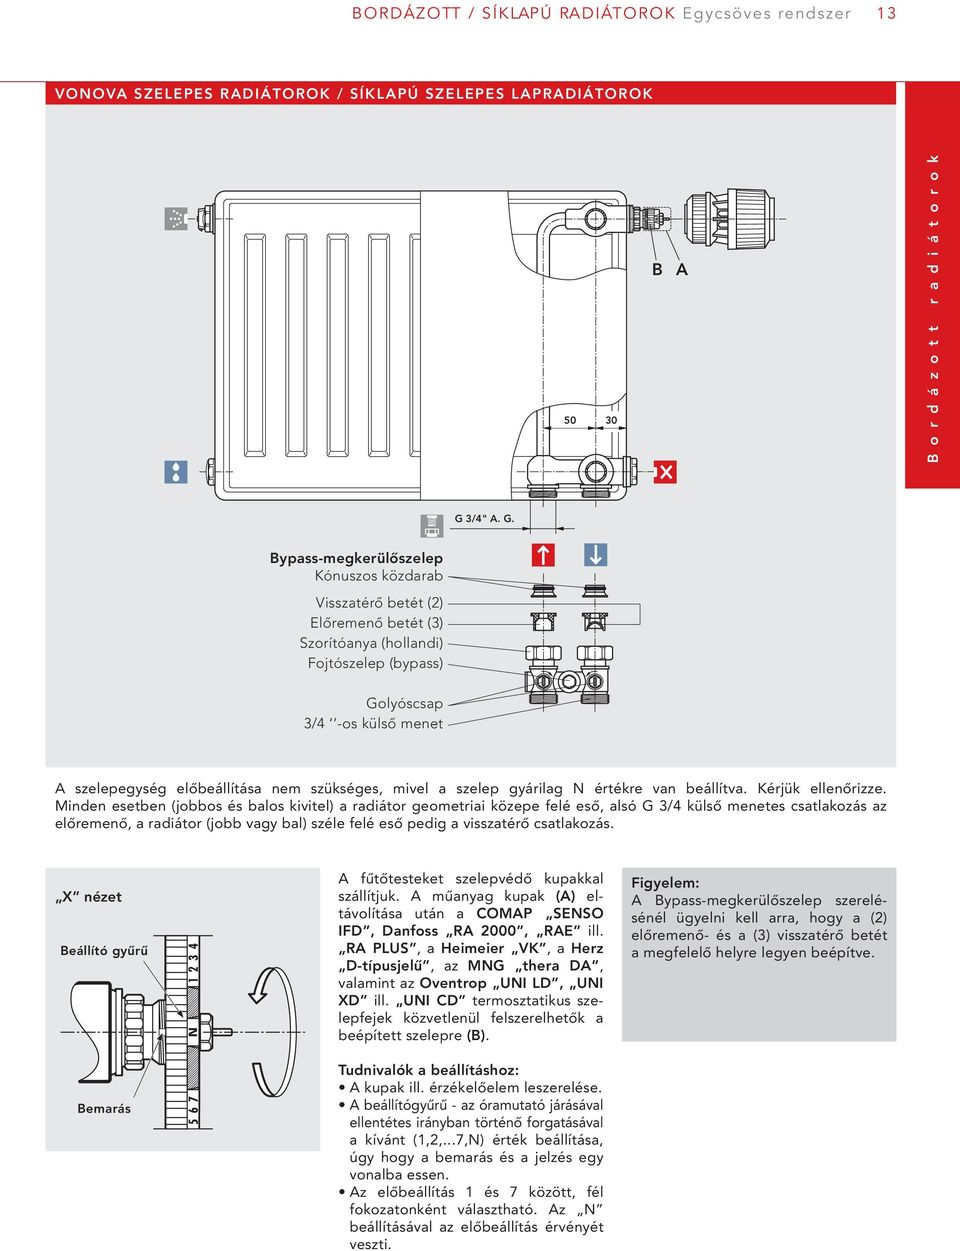 VOGEL&NOOT. Lapradiátorok. Műszaki katalógus 01/2010 U. design!  heatingthroughinnovation. - PDF Free Download